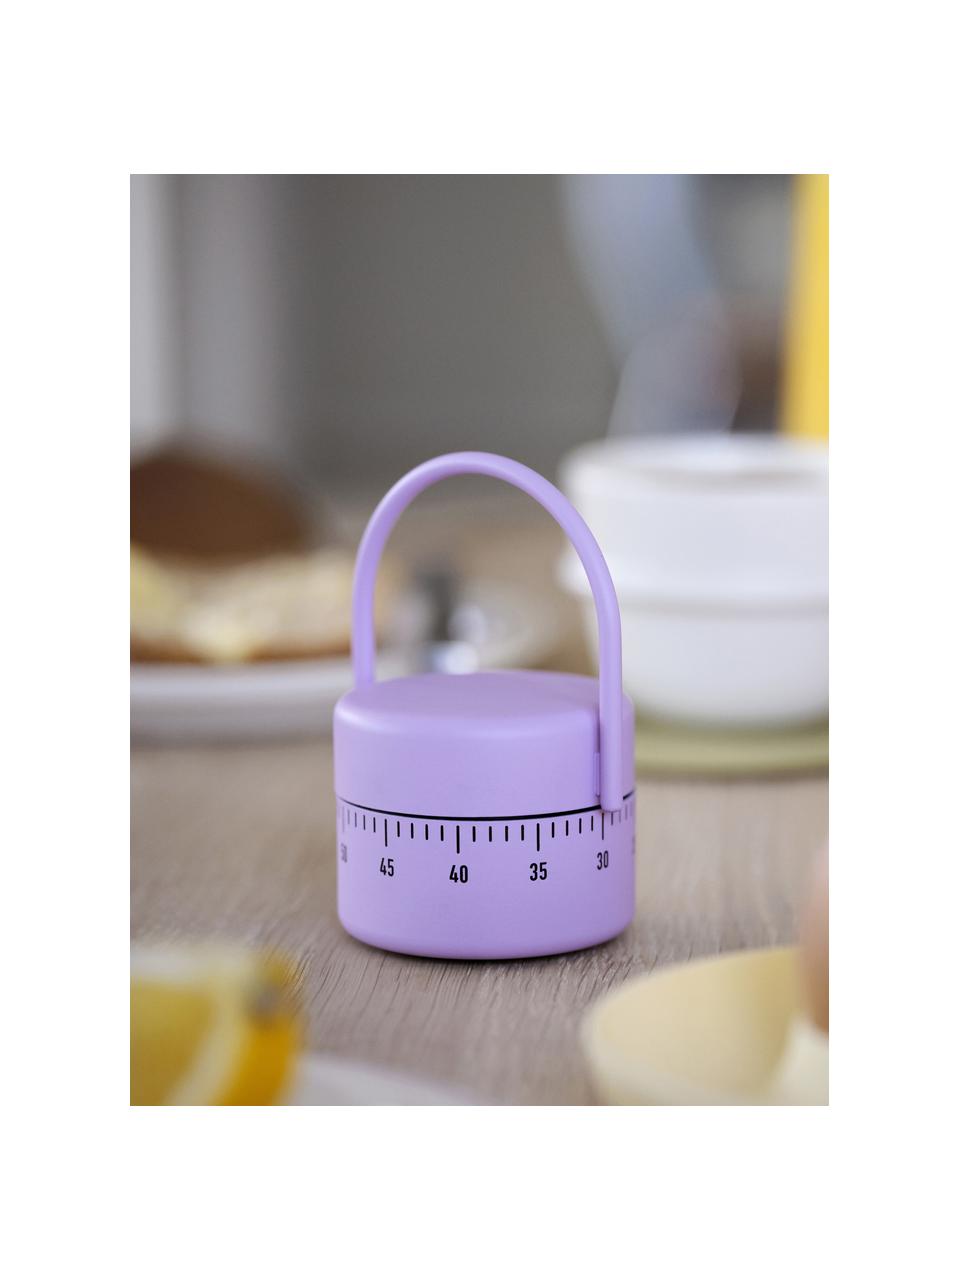 Küchentimer Singles mit Soft-Touch-Oberfläche, Kunststoff mit Soft-Touch-Oberfläche, Lavendel, Ø 5 x H 9 cm